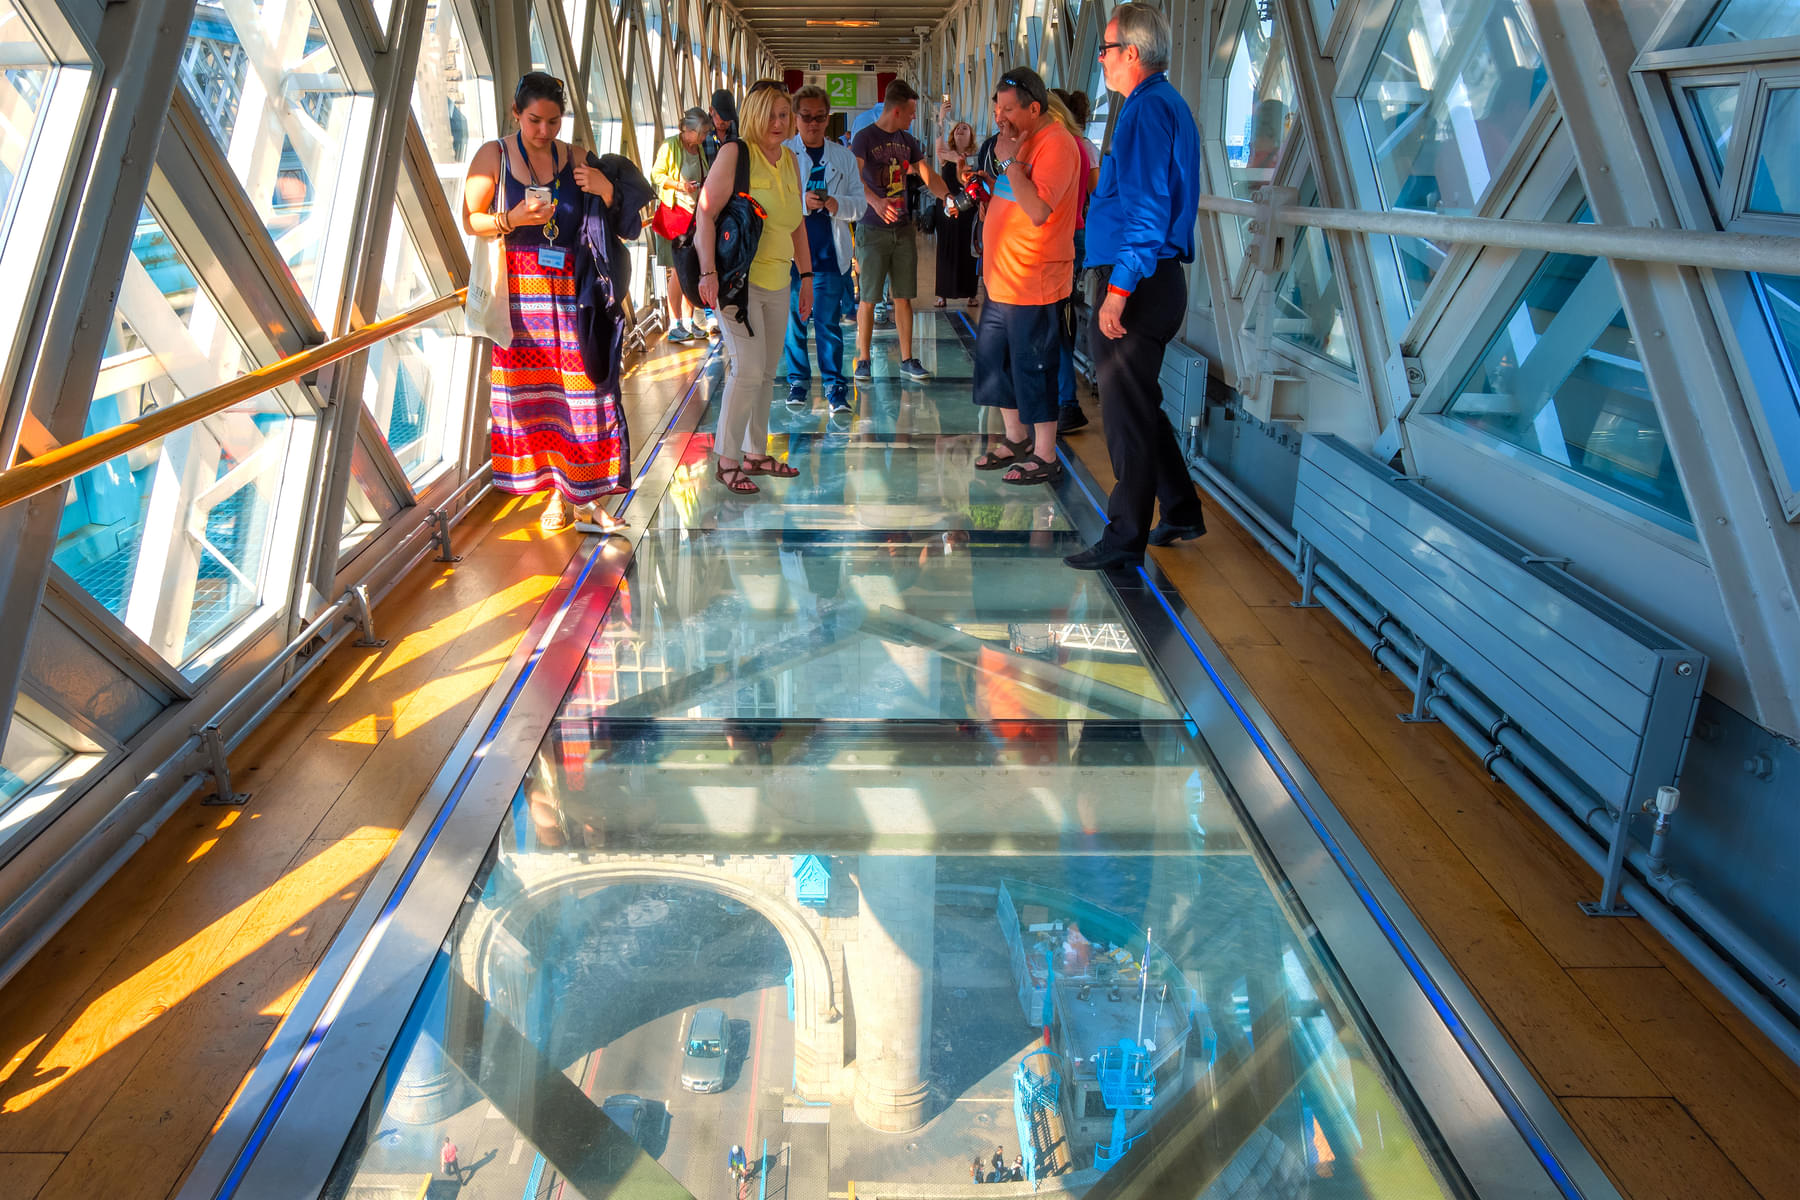 Enjoy this impressive glass walk tour on the Tower Bridge